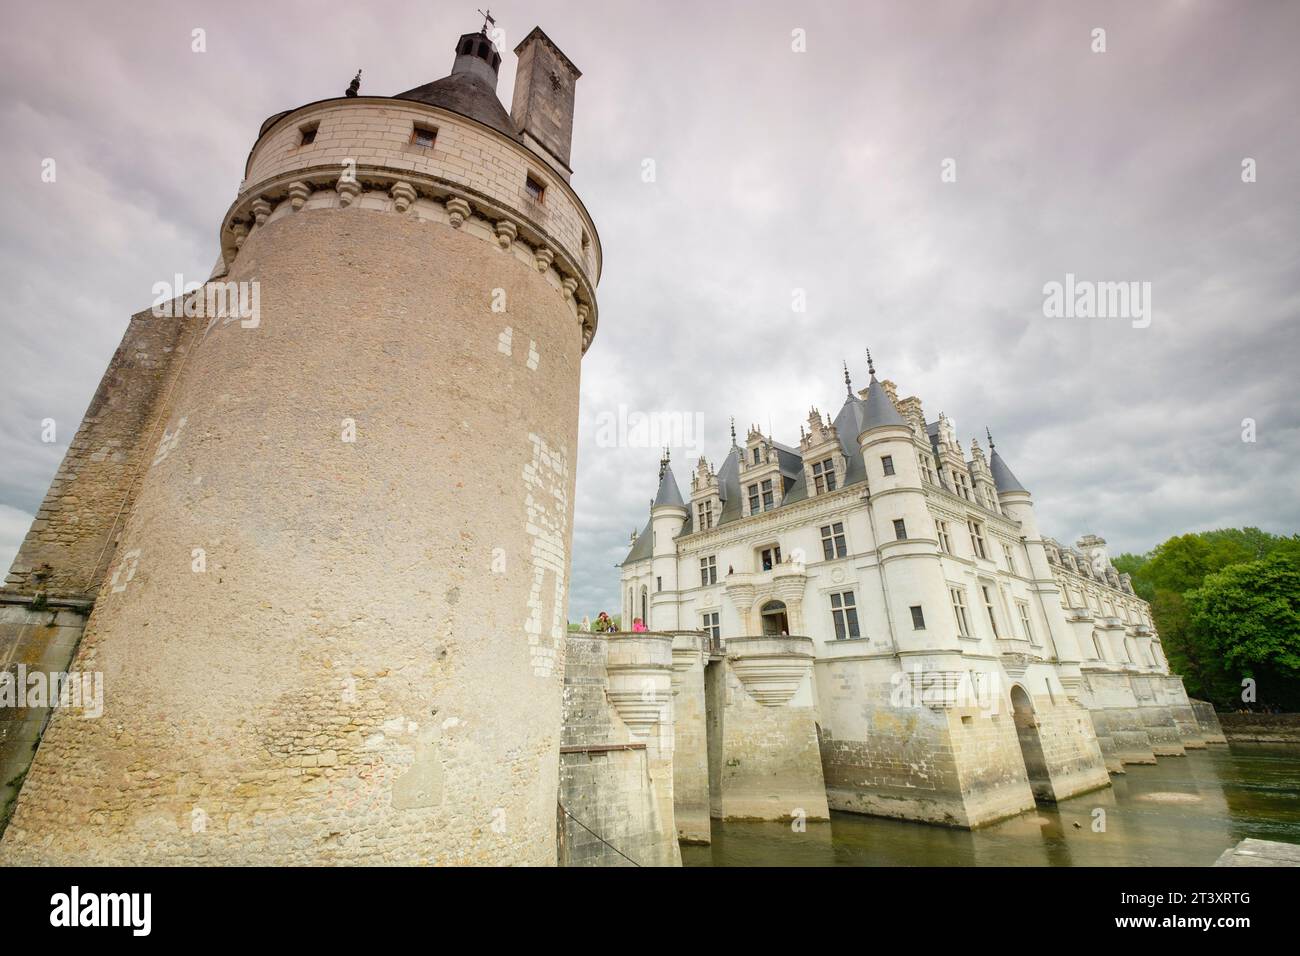 Tour des Marques, castillo de Chenonceau, siglo XVI, Chenonceaux, departamento de Indre y Loira,France,Western Europe. Stock Photo